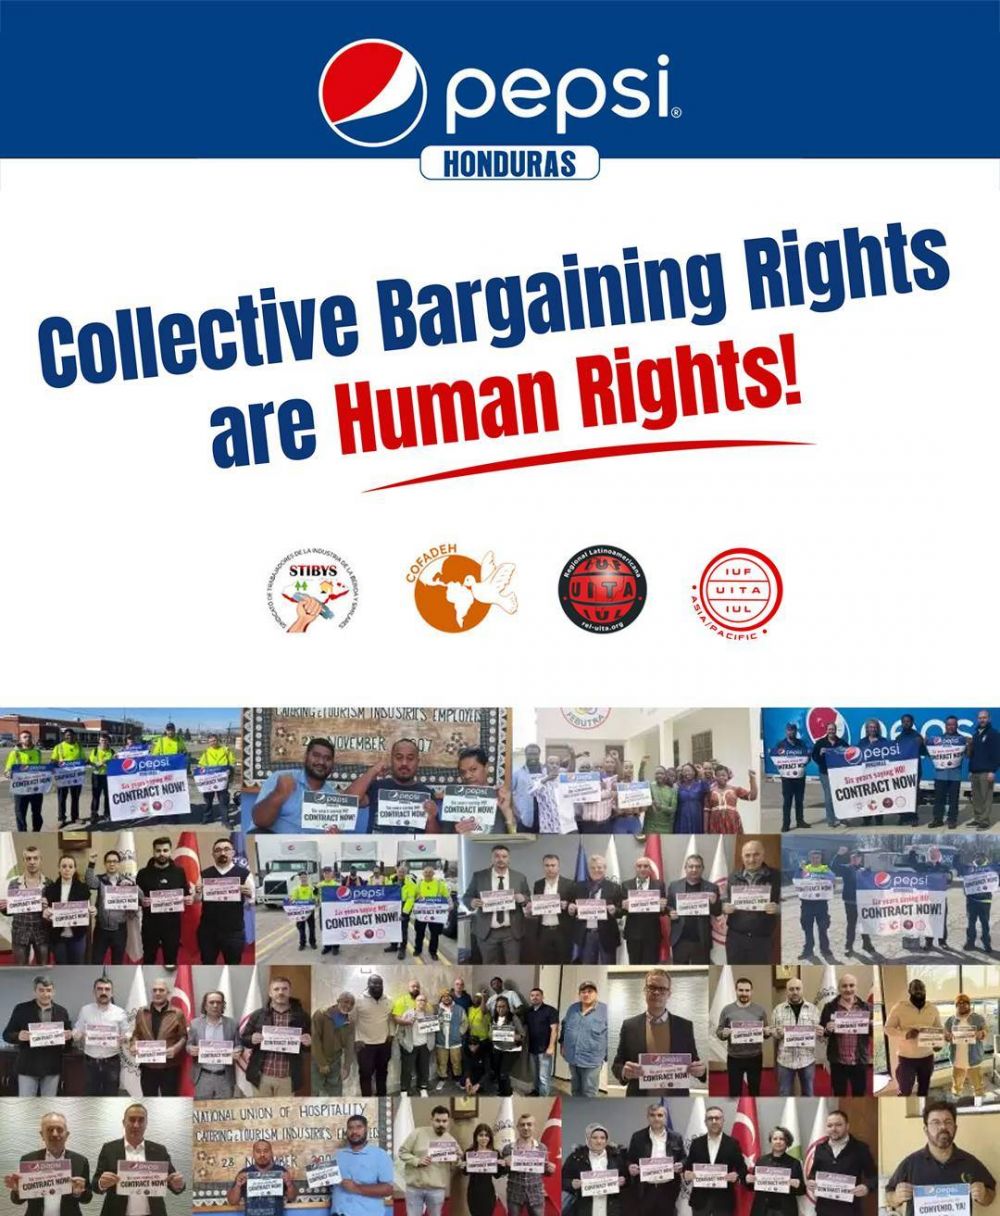 ¡Que se respeten los derechos de negociación colectiva en PepsiCo!